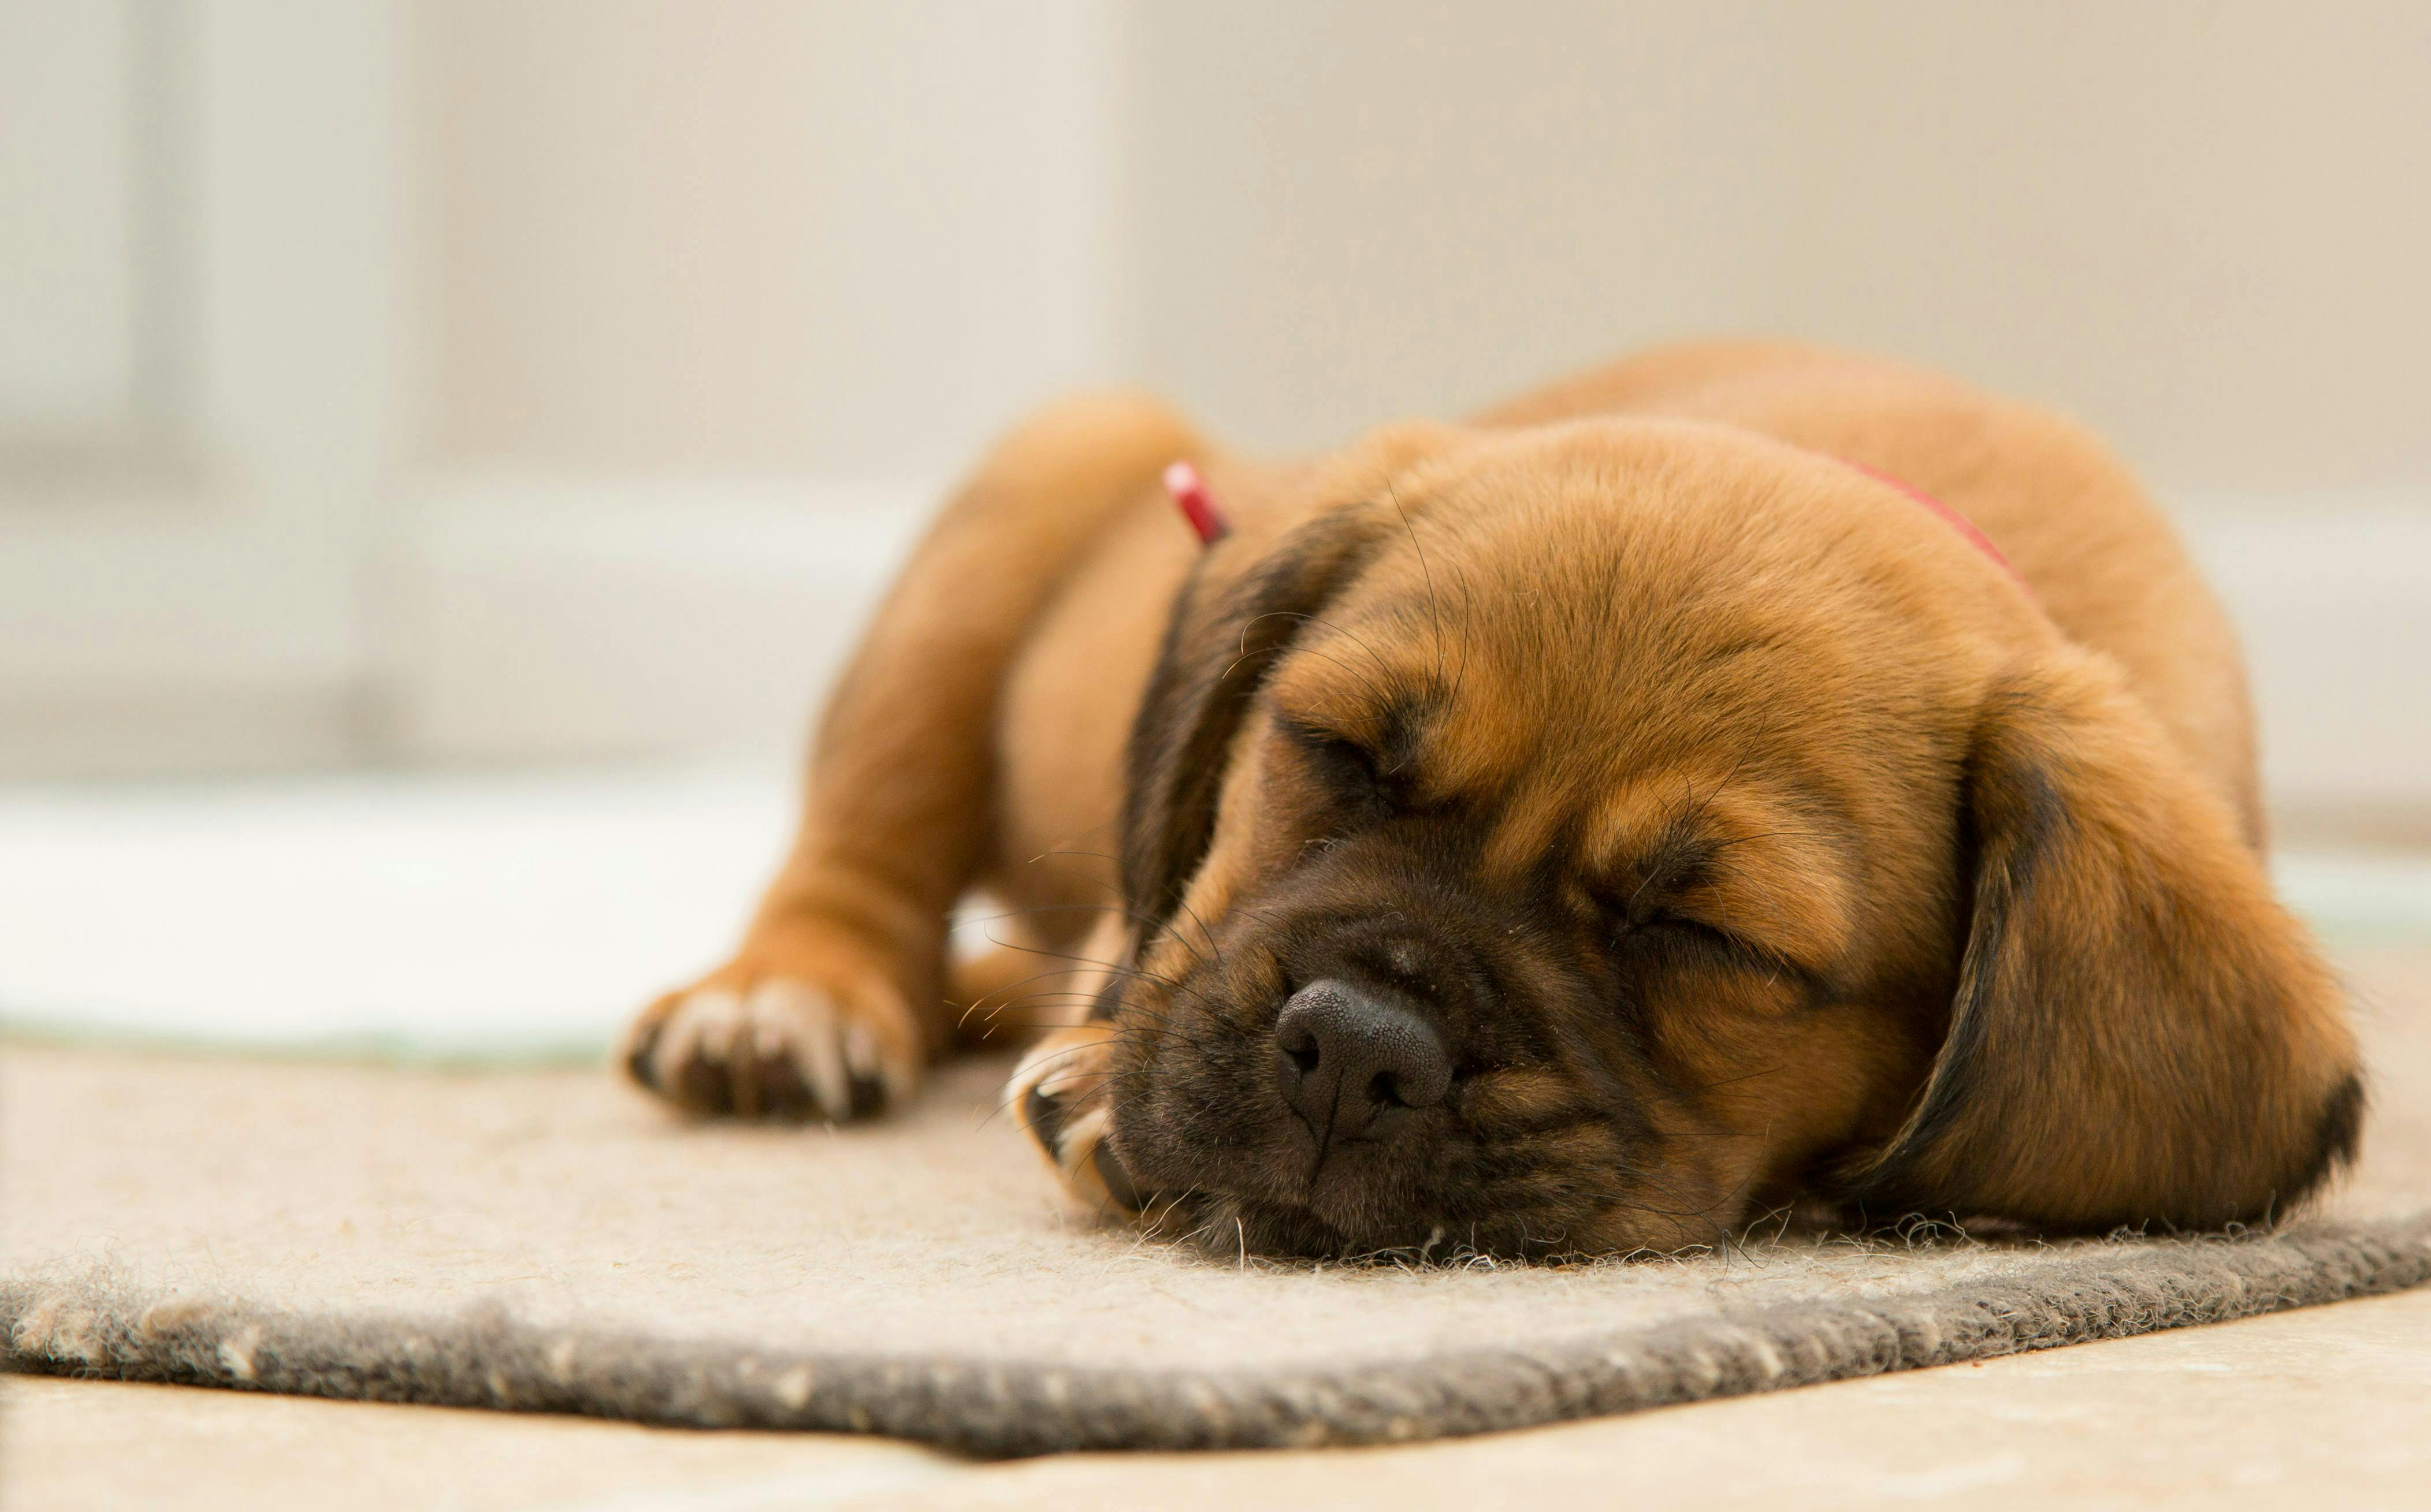 A puppy sleeping on a mat